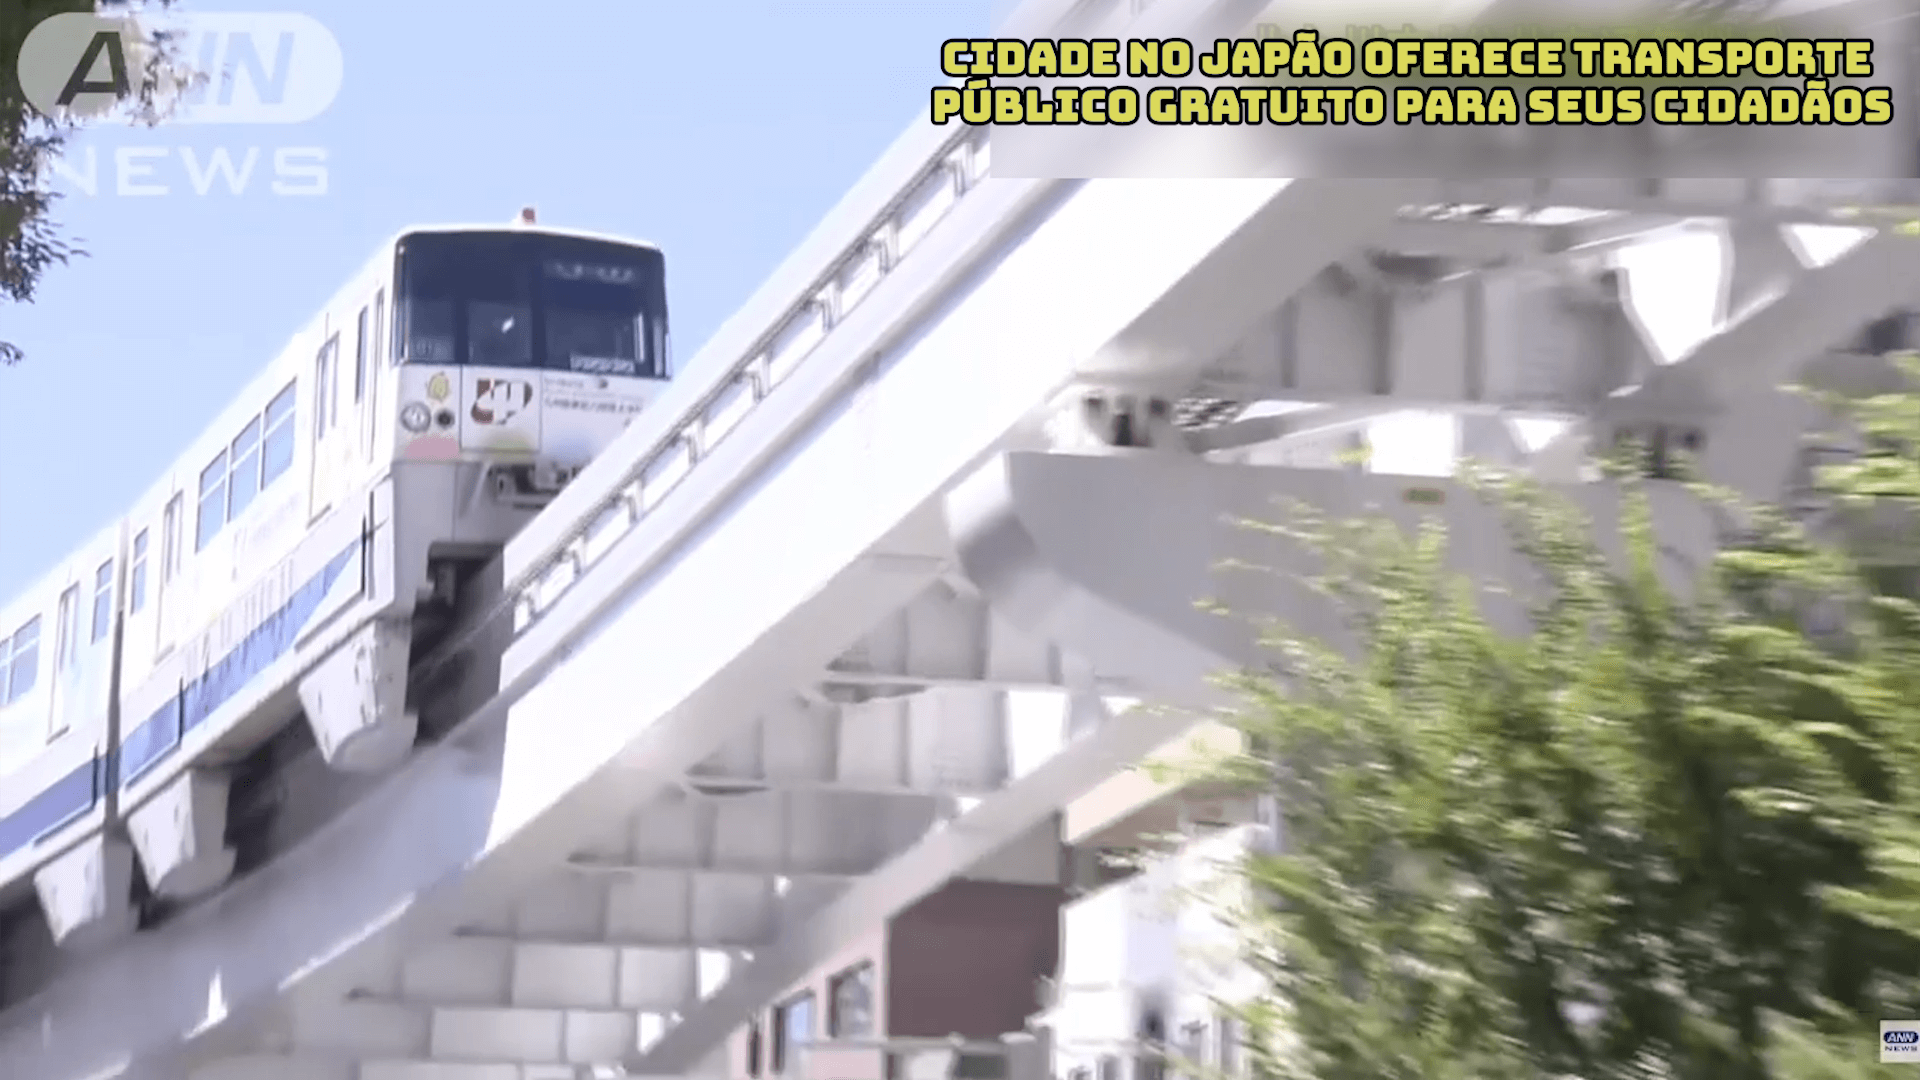 Cidade no Japão oferece transporte público gratuito para seus cidadãos